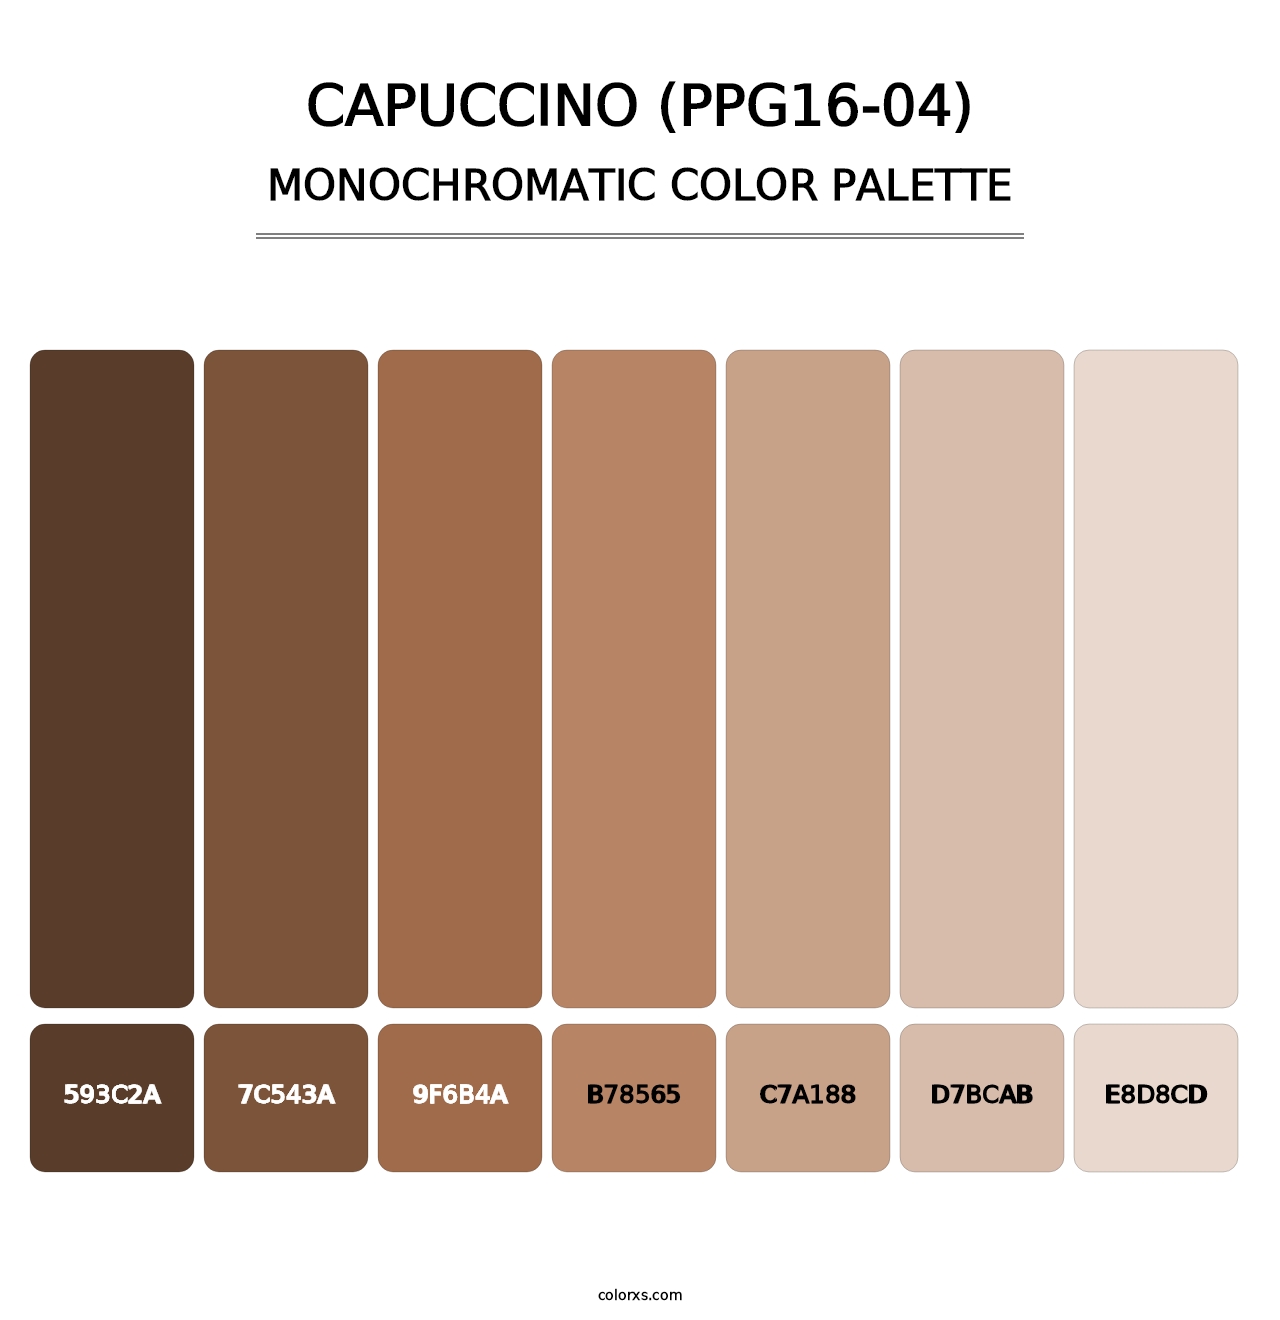 Capuccino (PPG16-04) - Monochromatic Color Palette